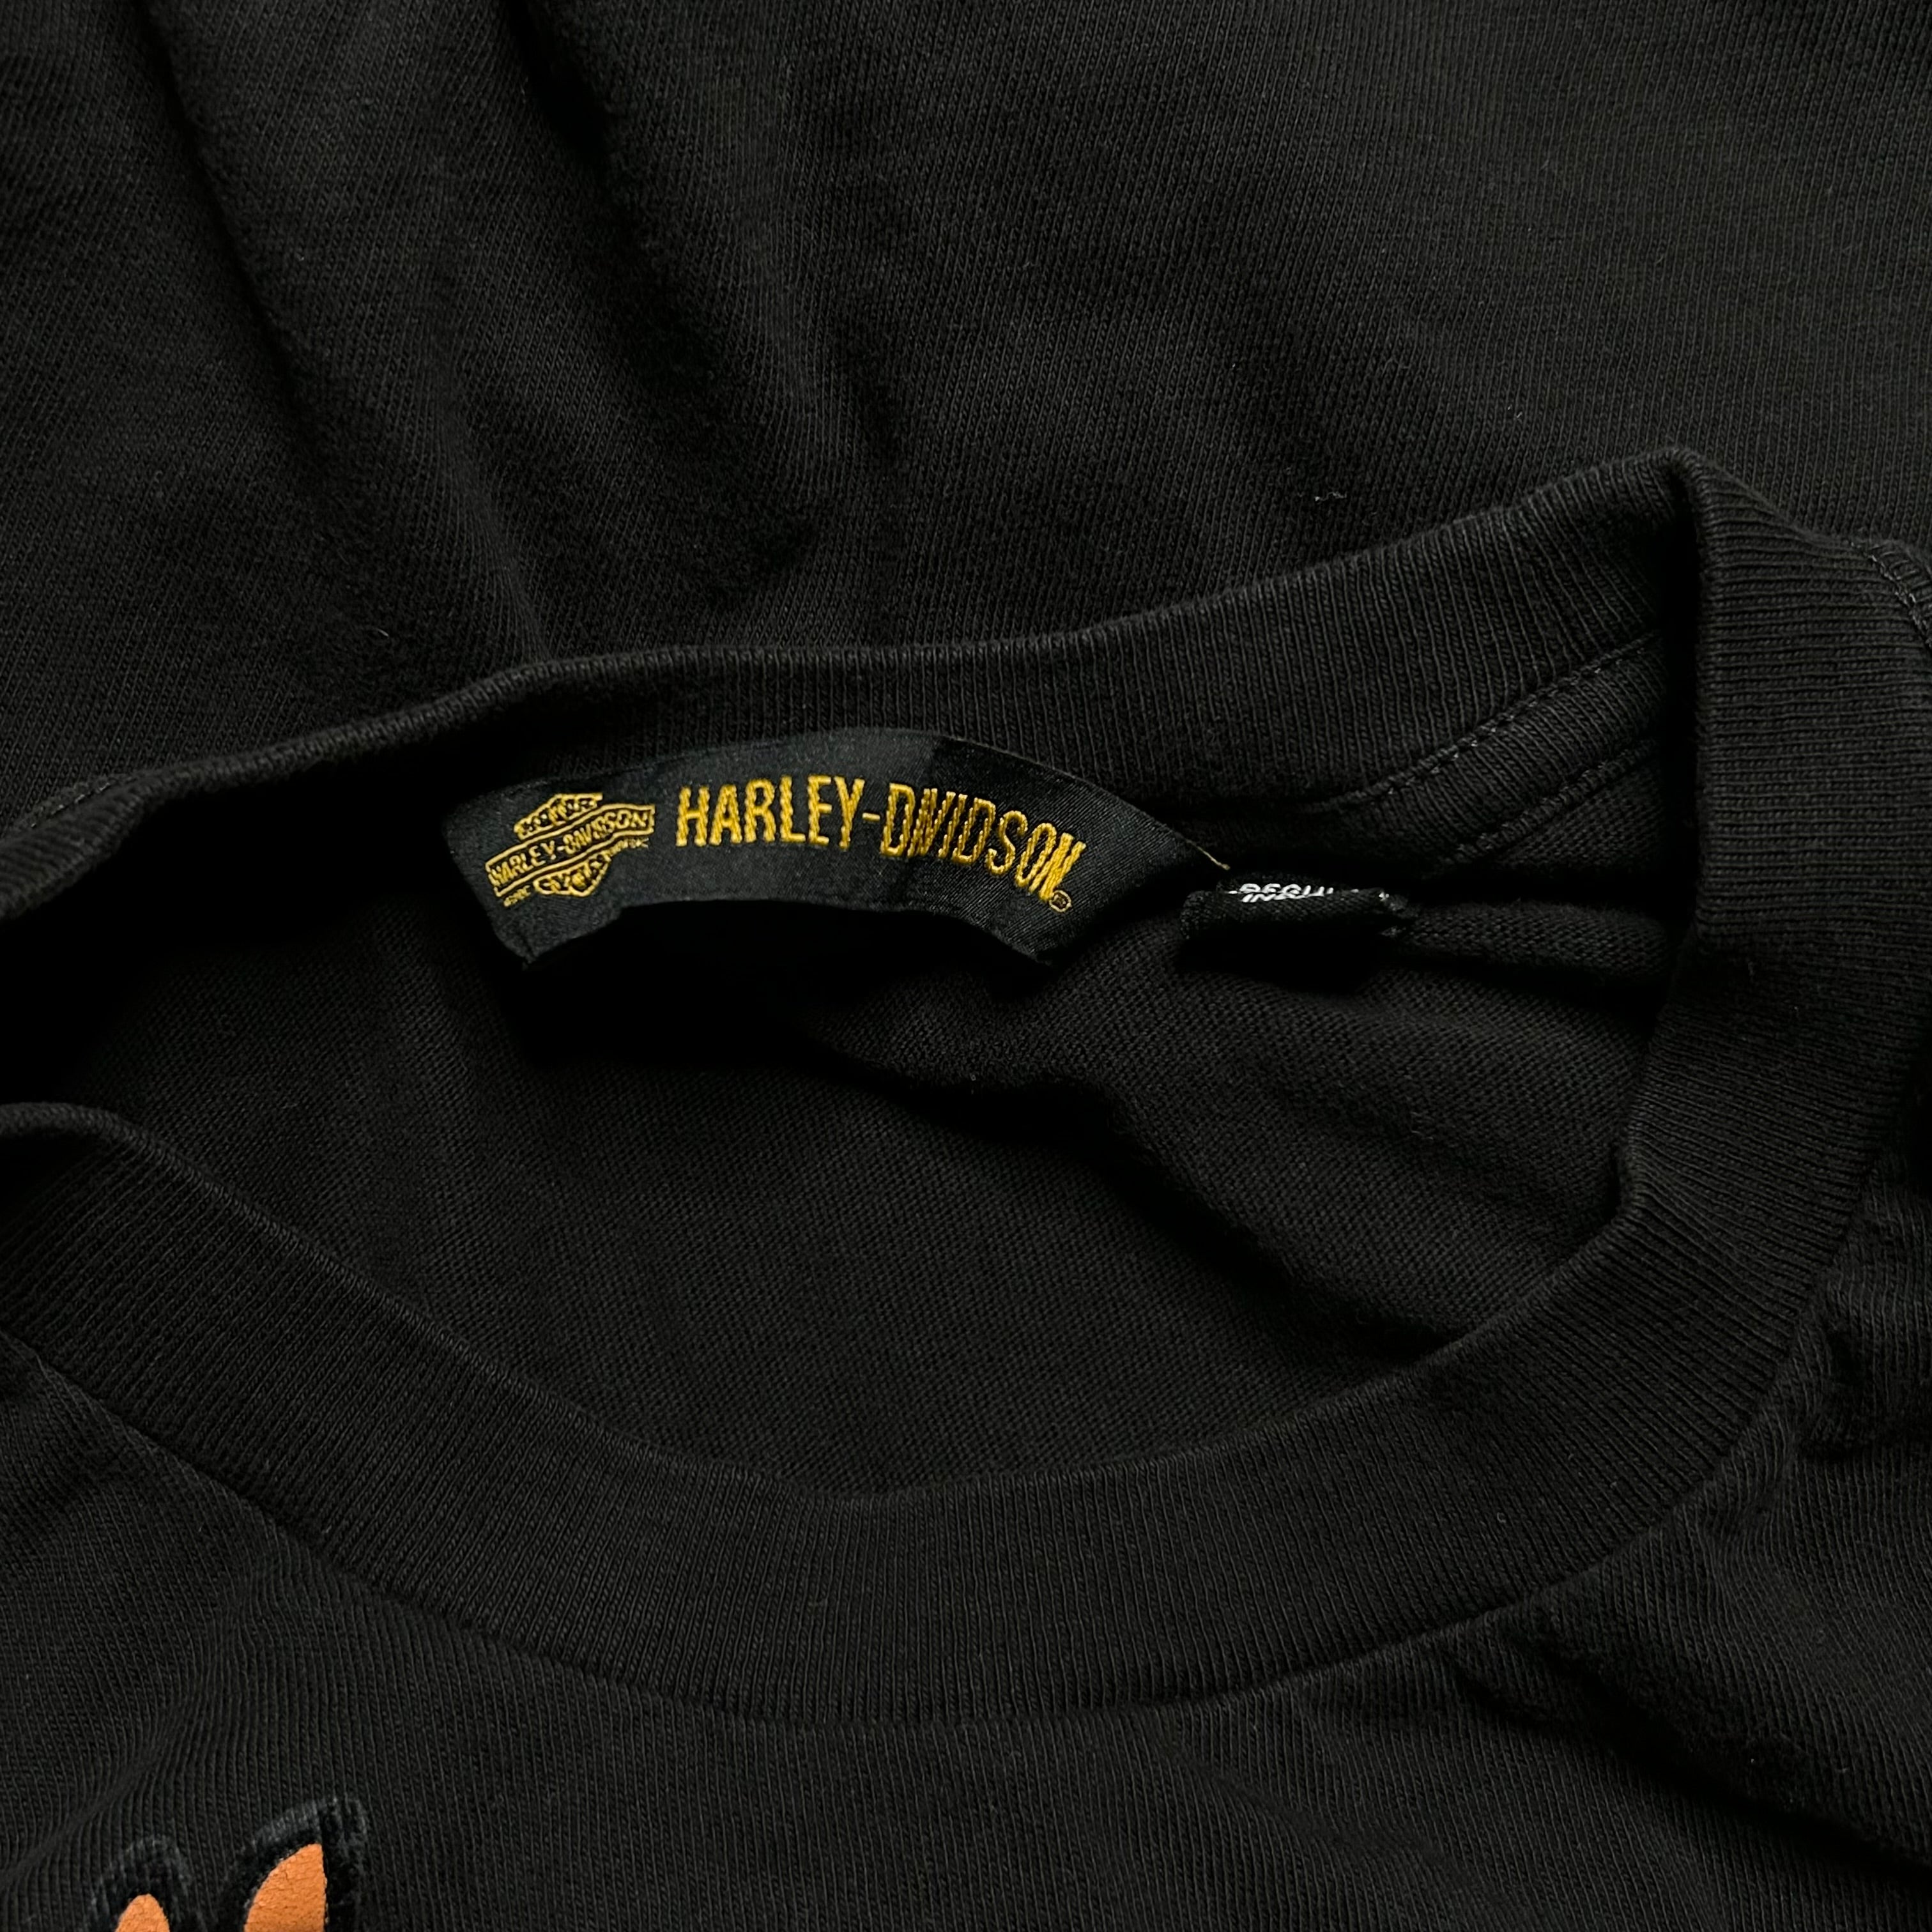 Harley Davidson Long Sleeve Tee (XL)